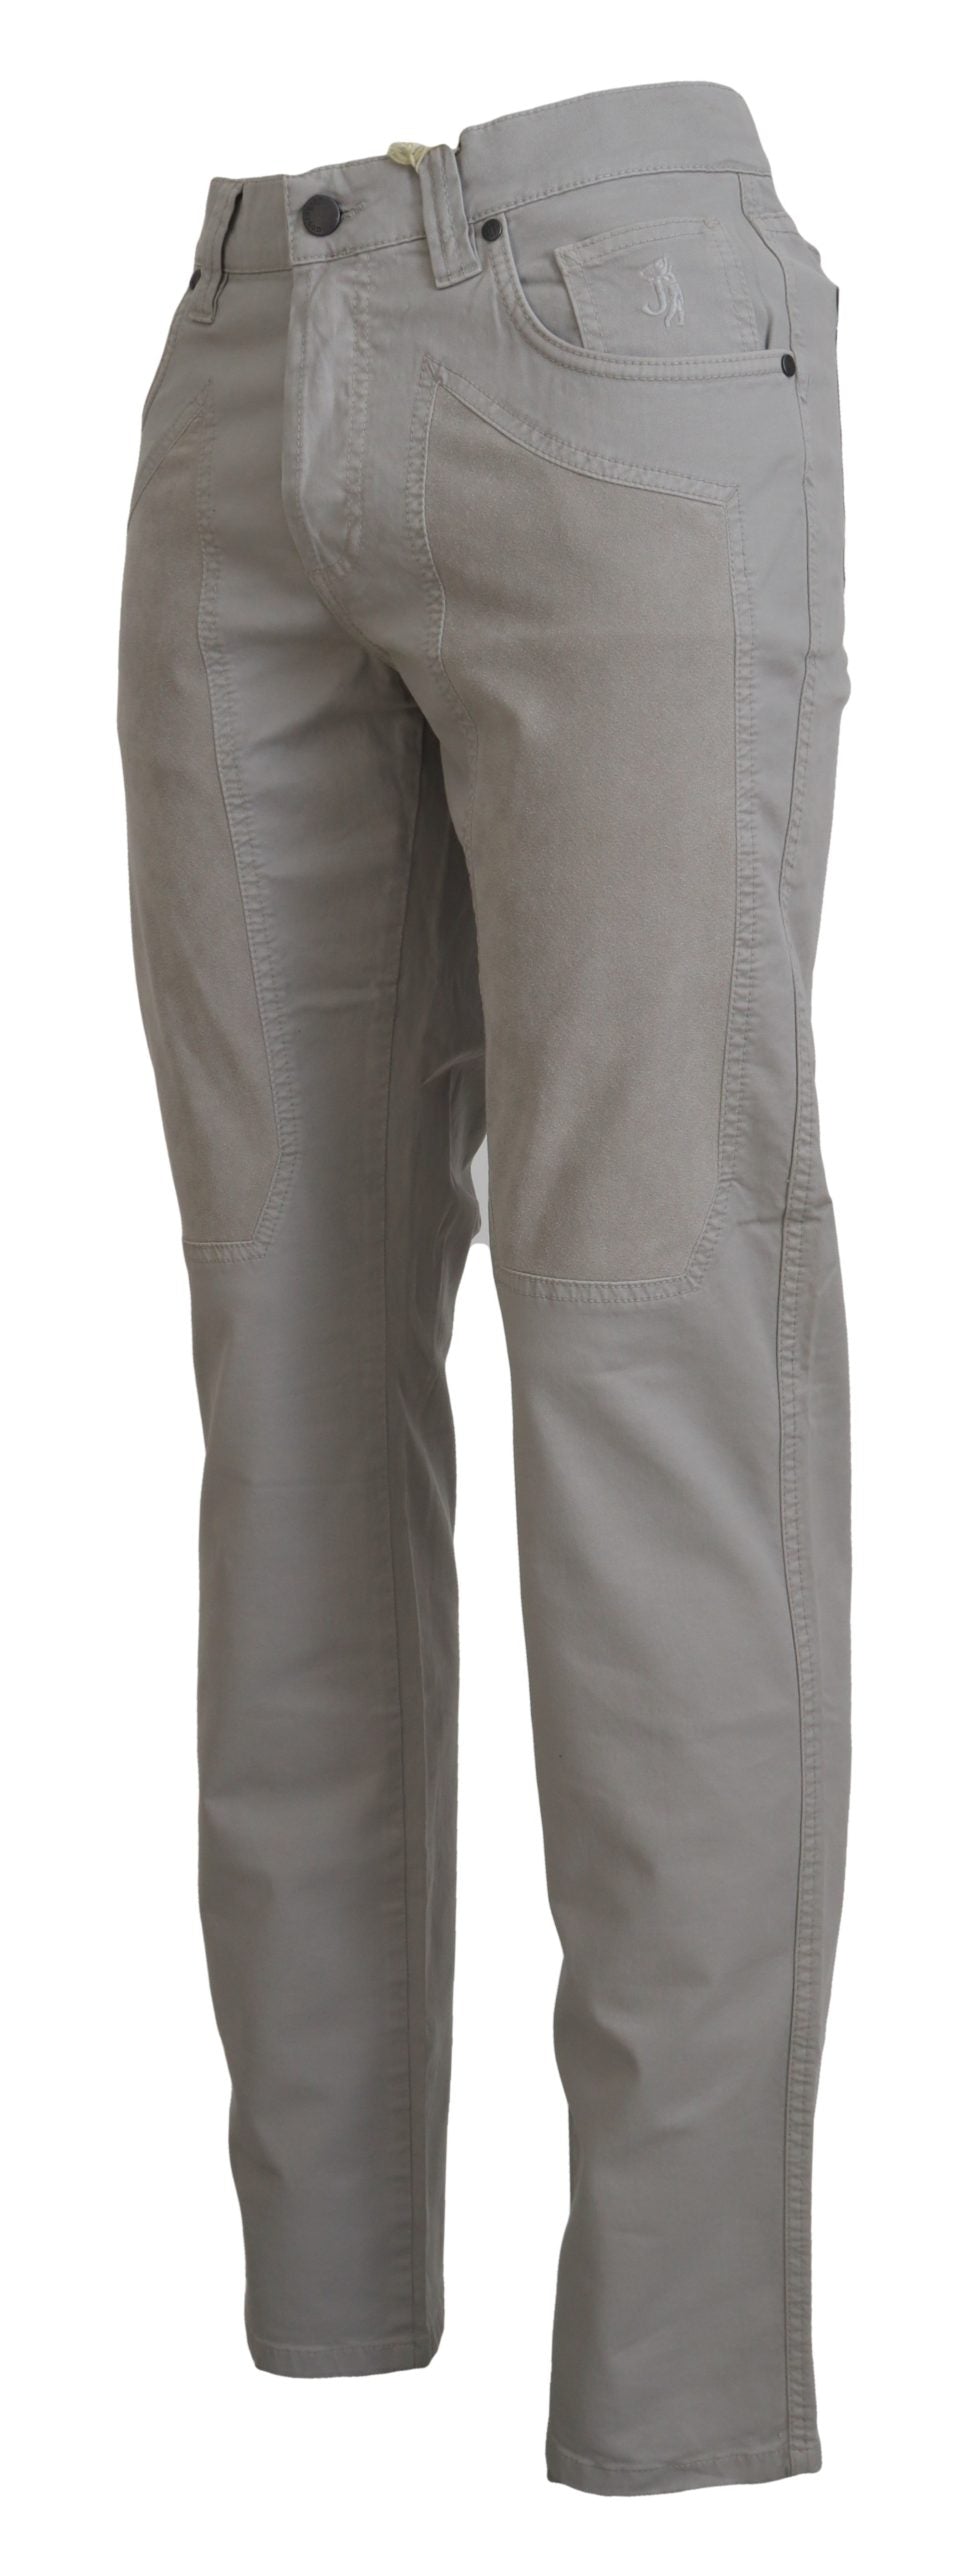 Jeckerson Elegant Gray Cotton Blend Pants